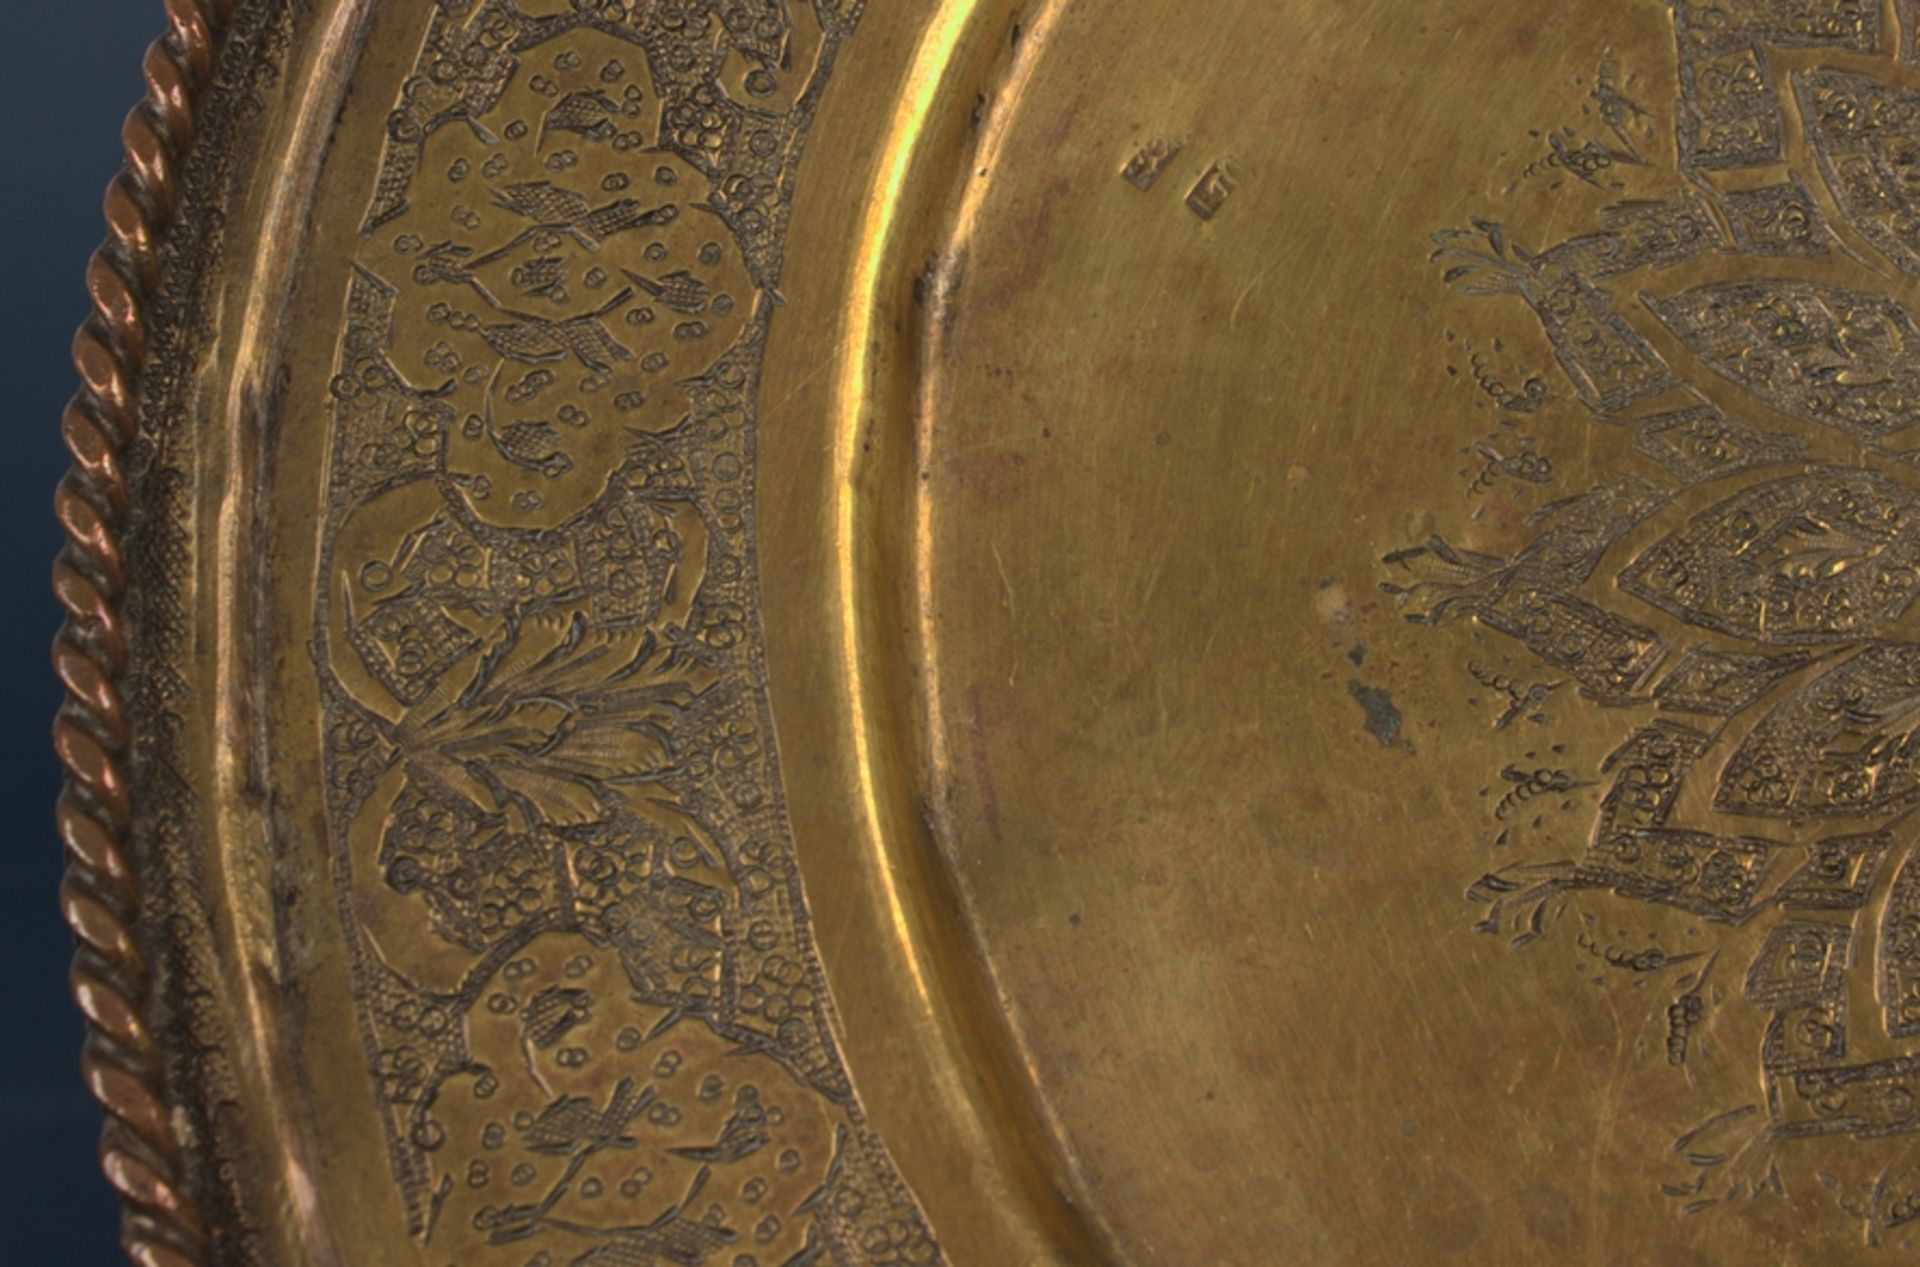 Runde Platte/Teller. Messingbronze mit graviertem Floraldekoren. 20. Jhd., Durchmesser ca. 21,5 cm. - Bild 4 aus 7